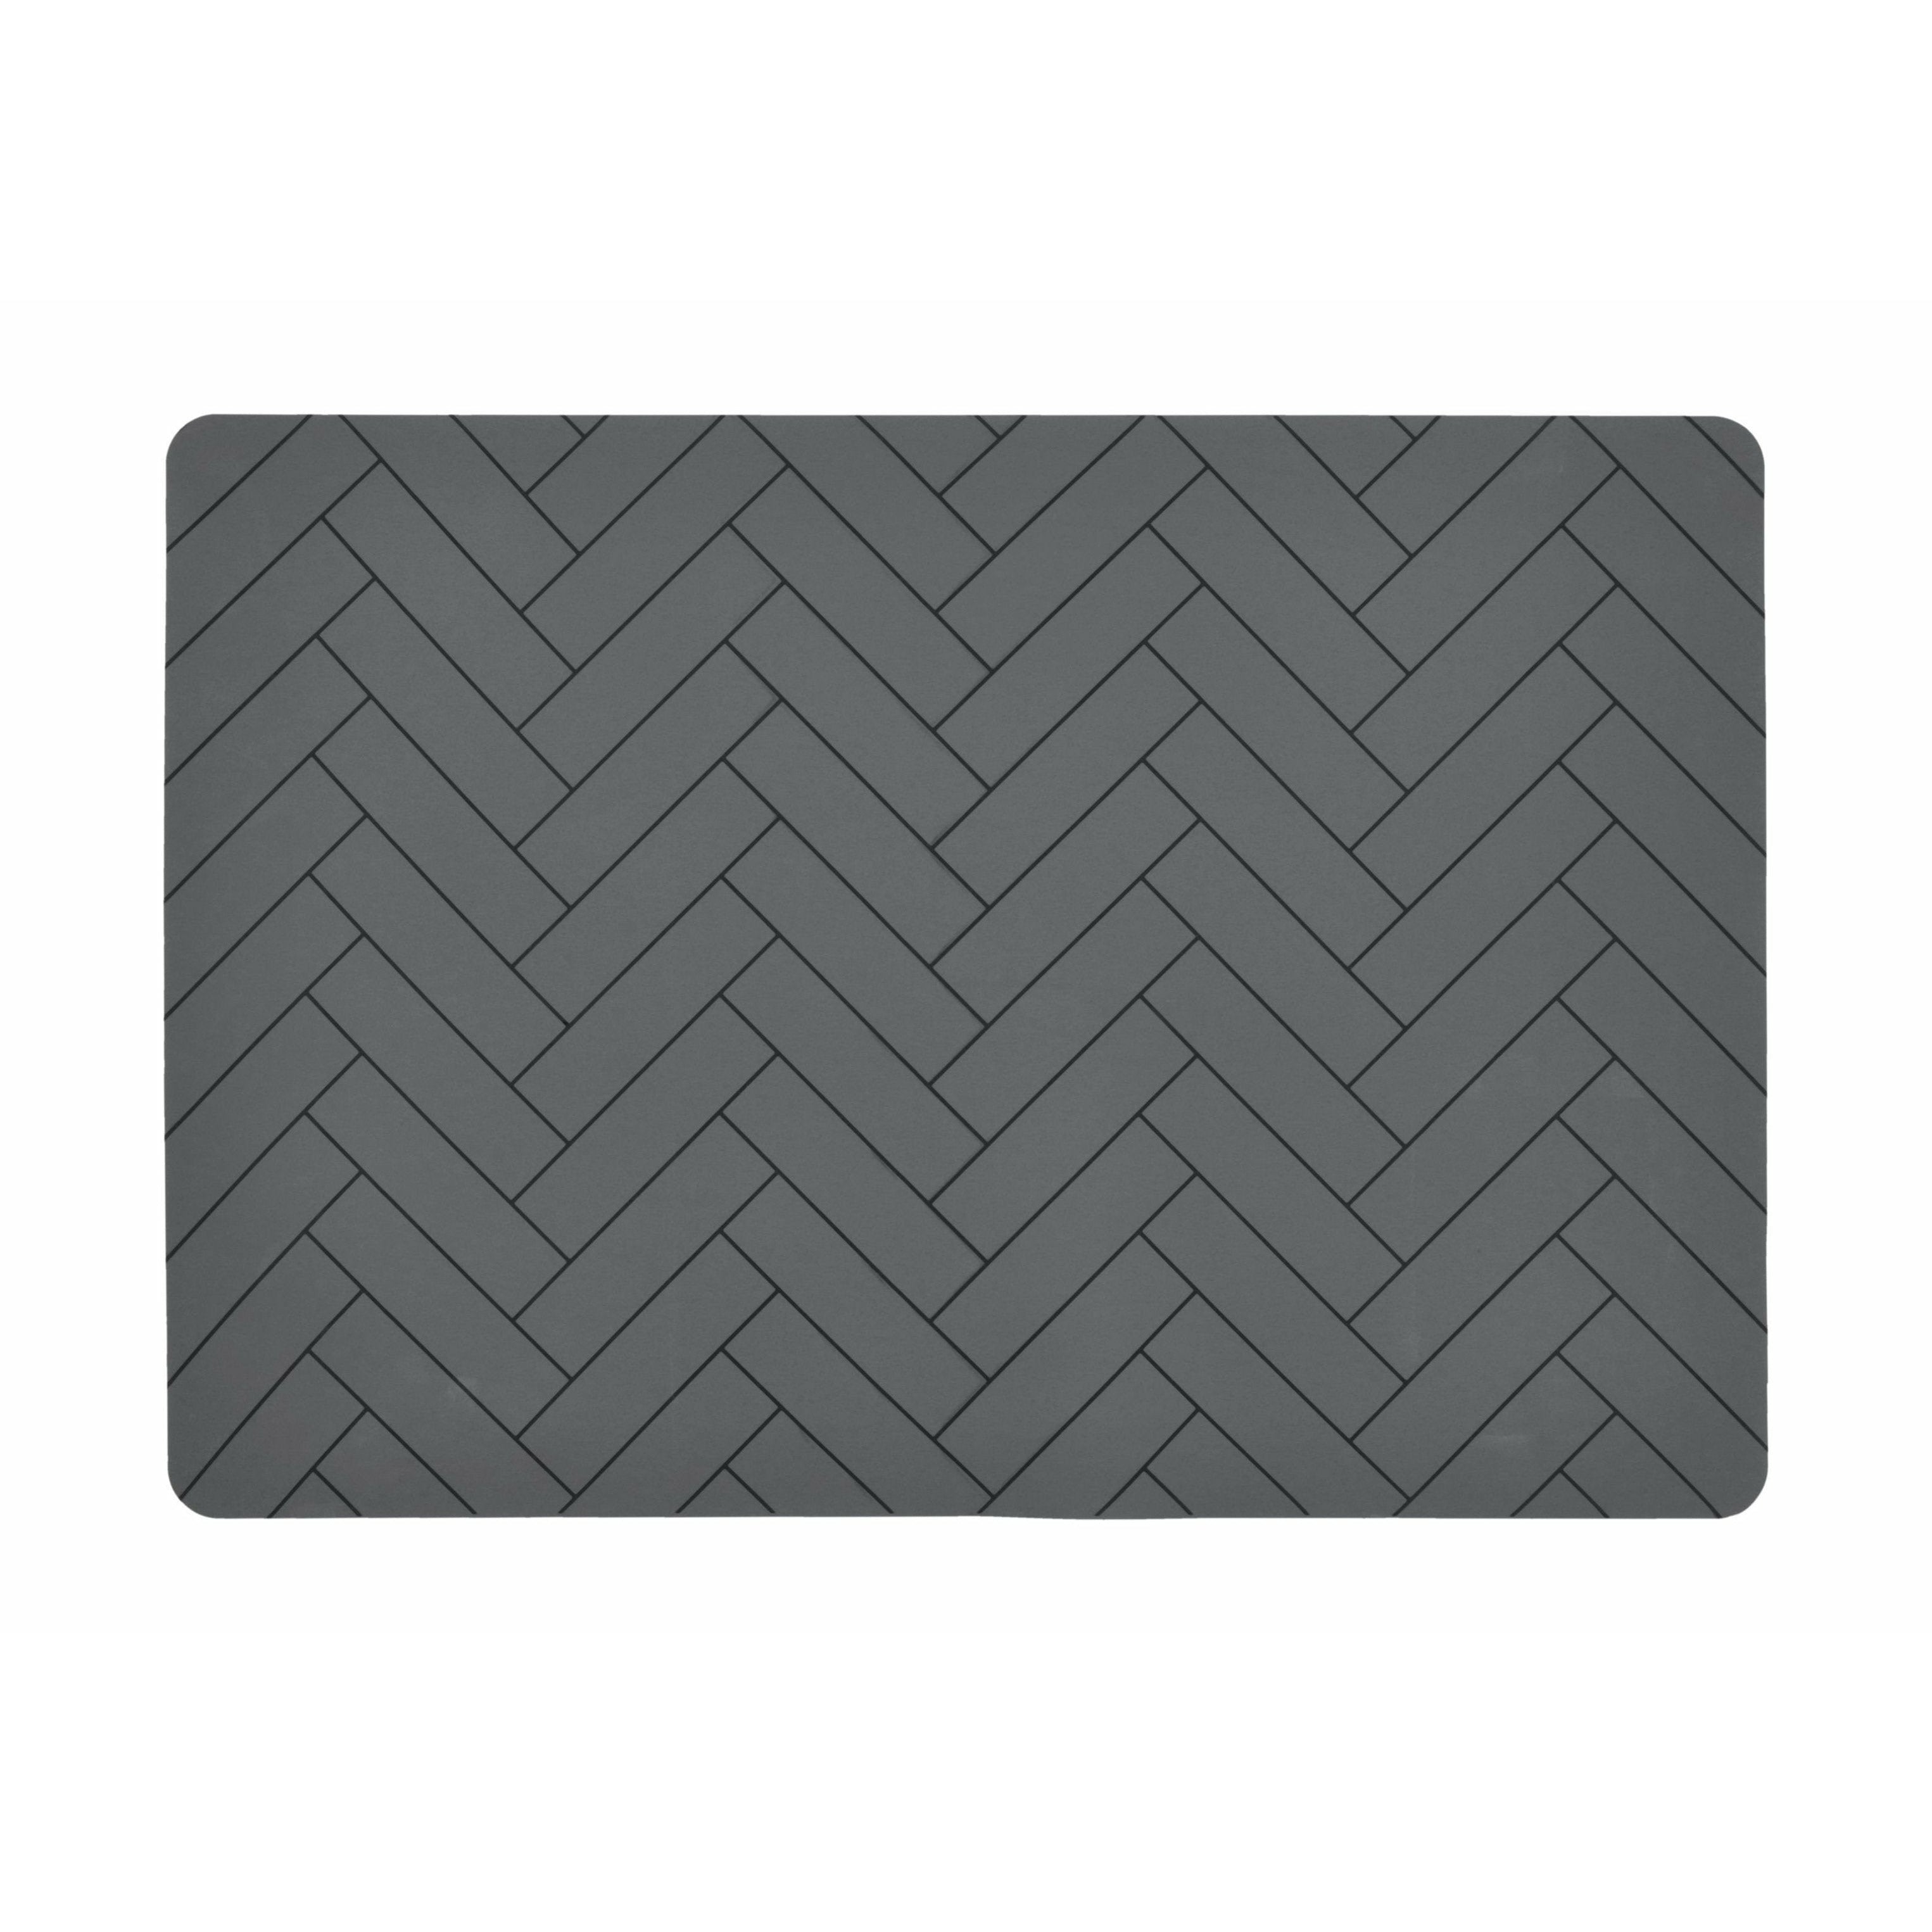 Sändahl Tiles Placemat 33x48, grå